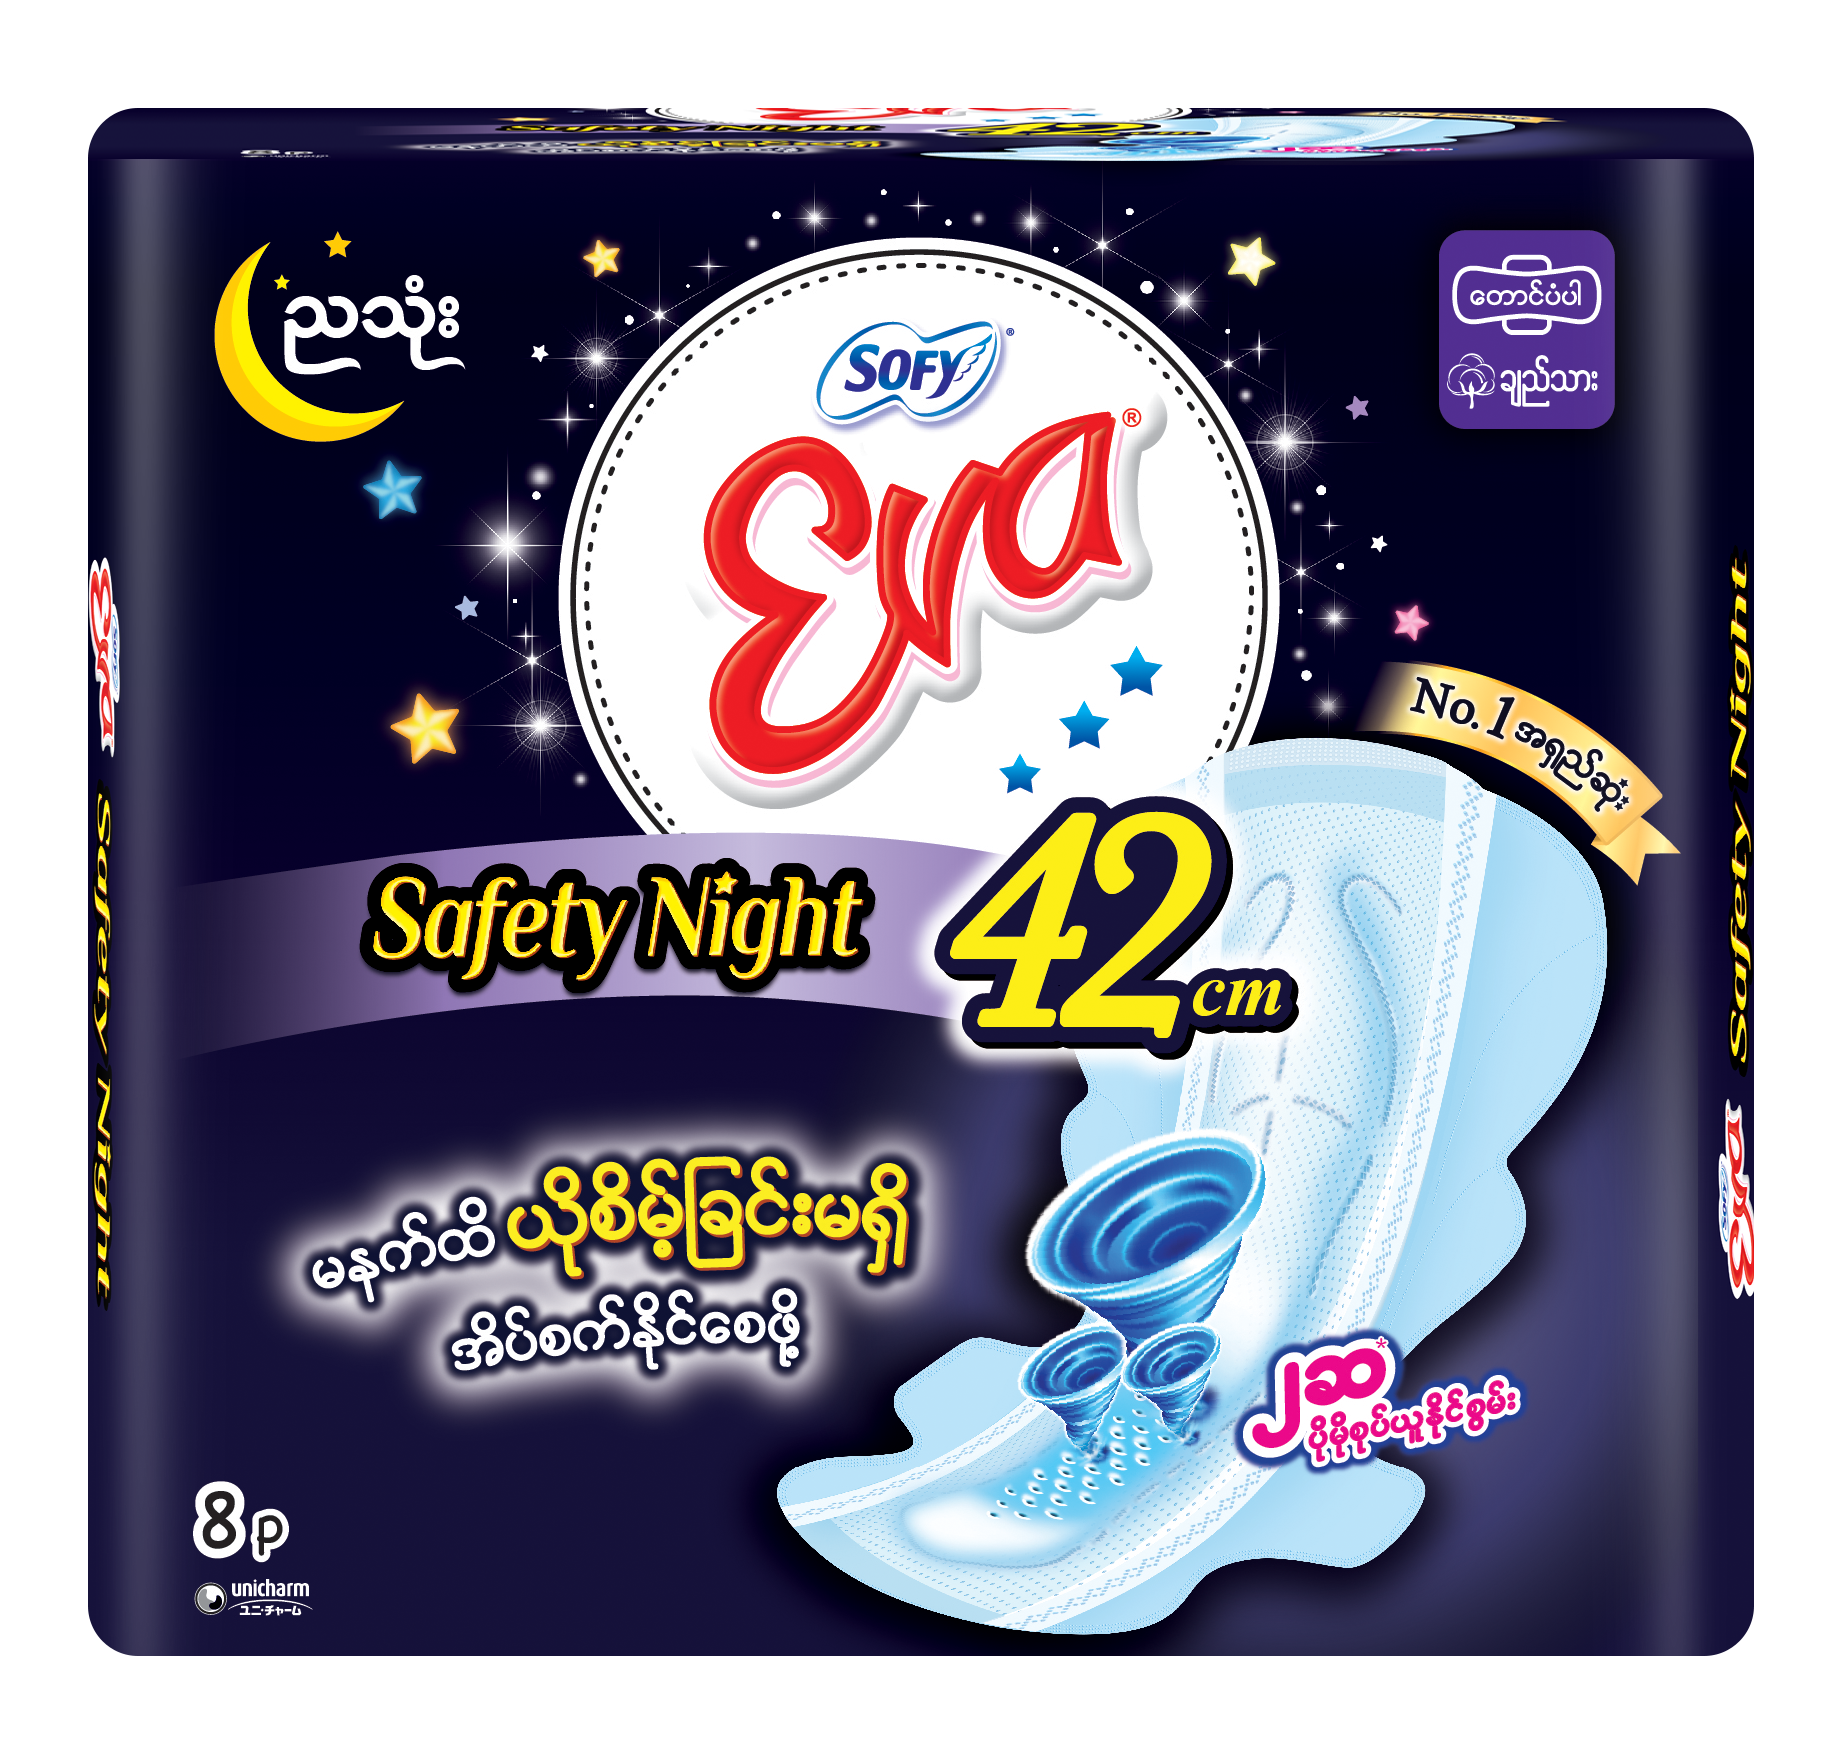 Eva Safety Night 42cm